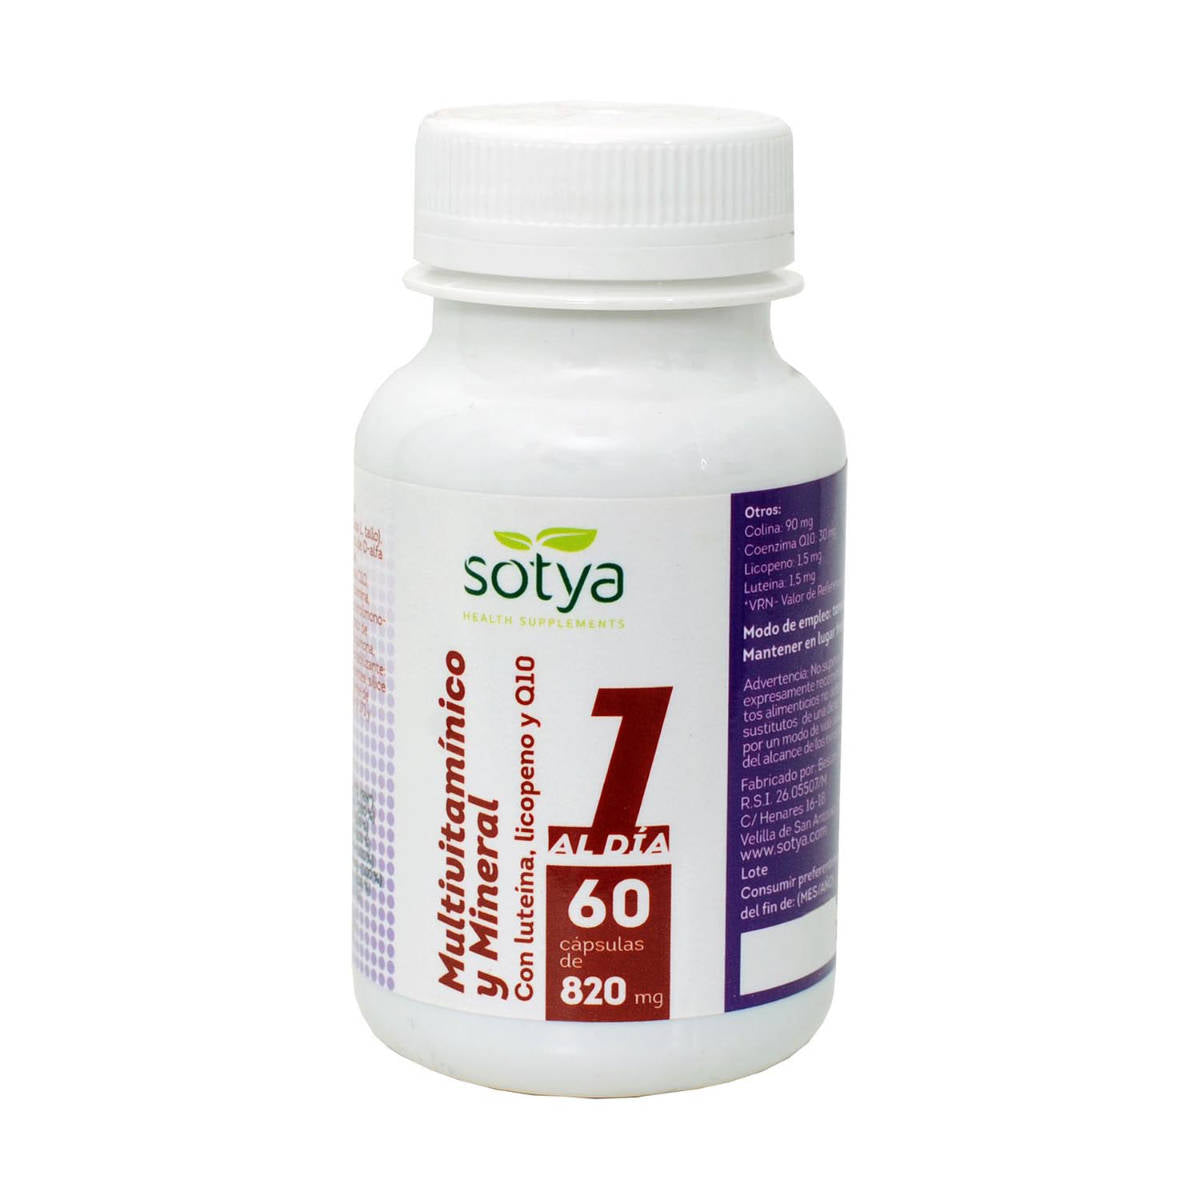 Sotya-Multivitaminico-Y-Mineral-820Mg-60-Comprimidos-Biopharmacia,-Parafarmacia-online